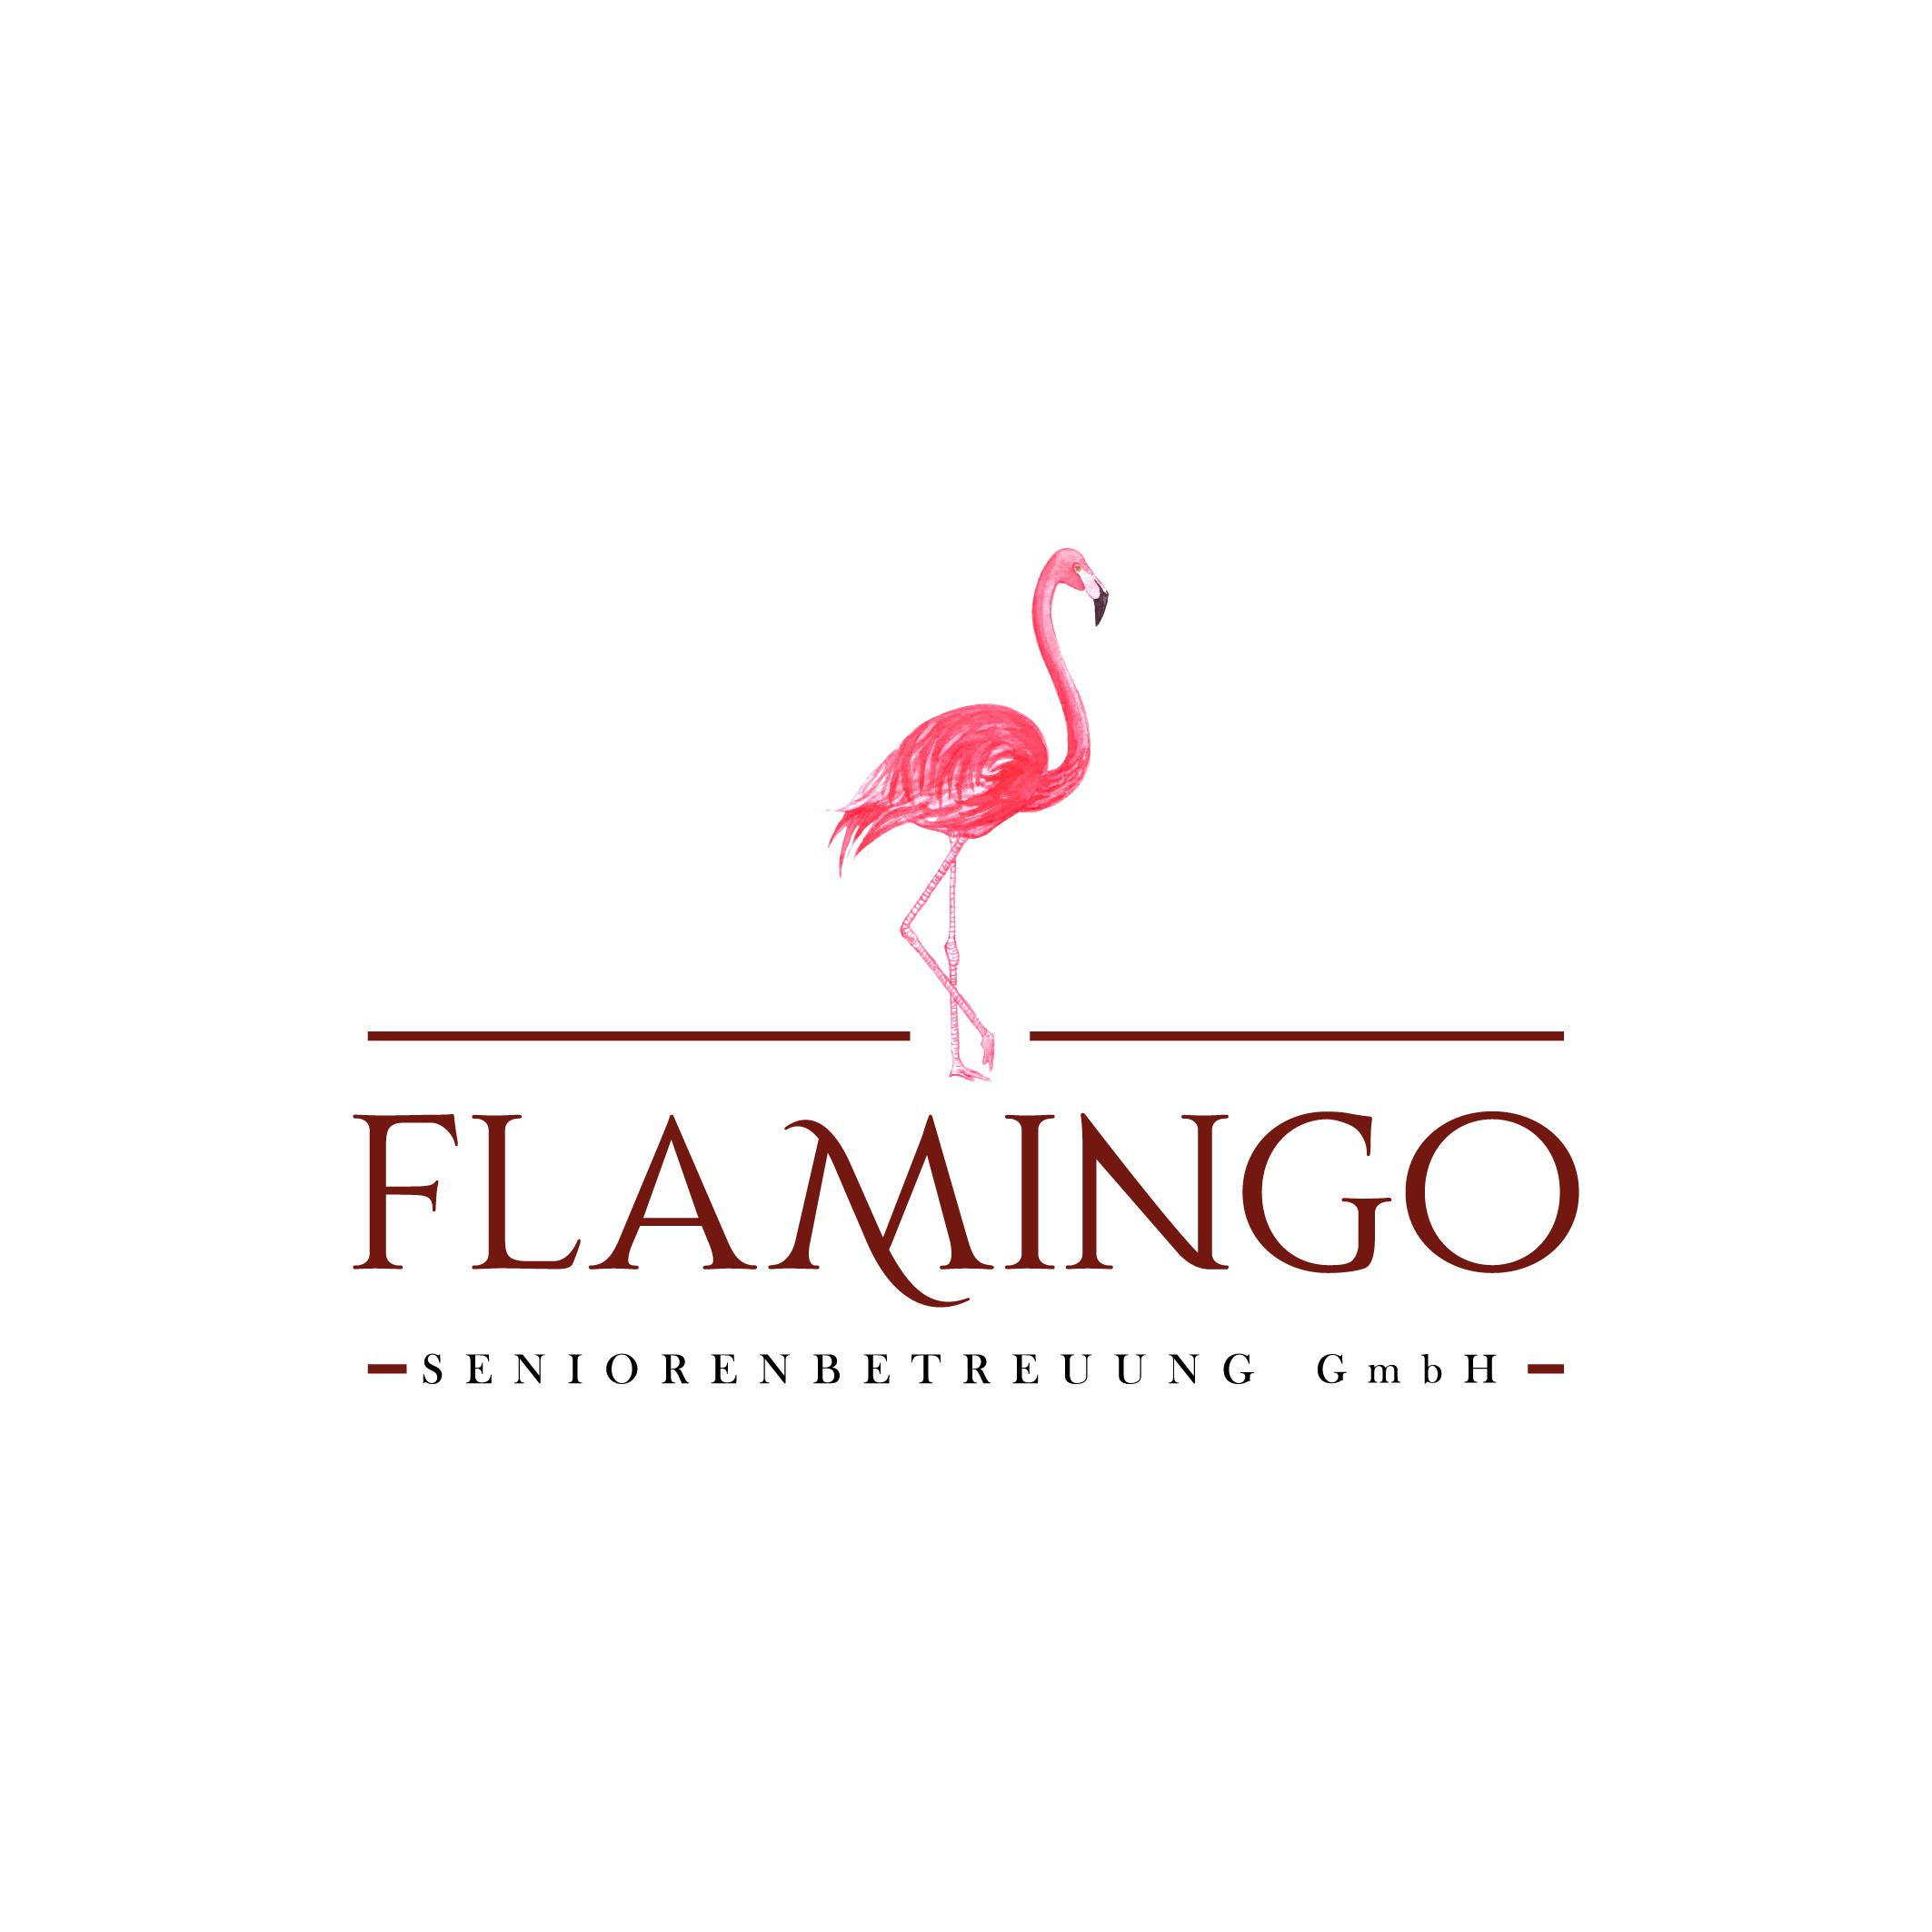 Flamingo Seniorenbetreuung GmbH in Bochum - Logo